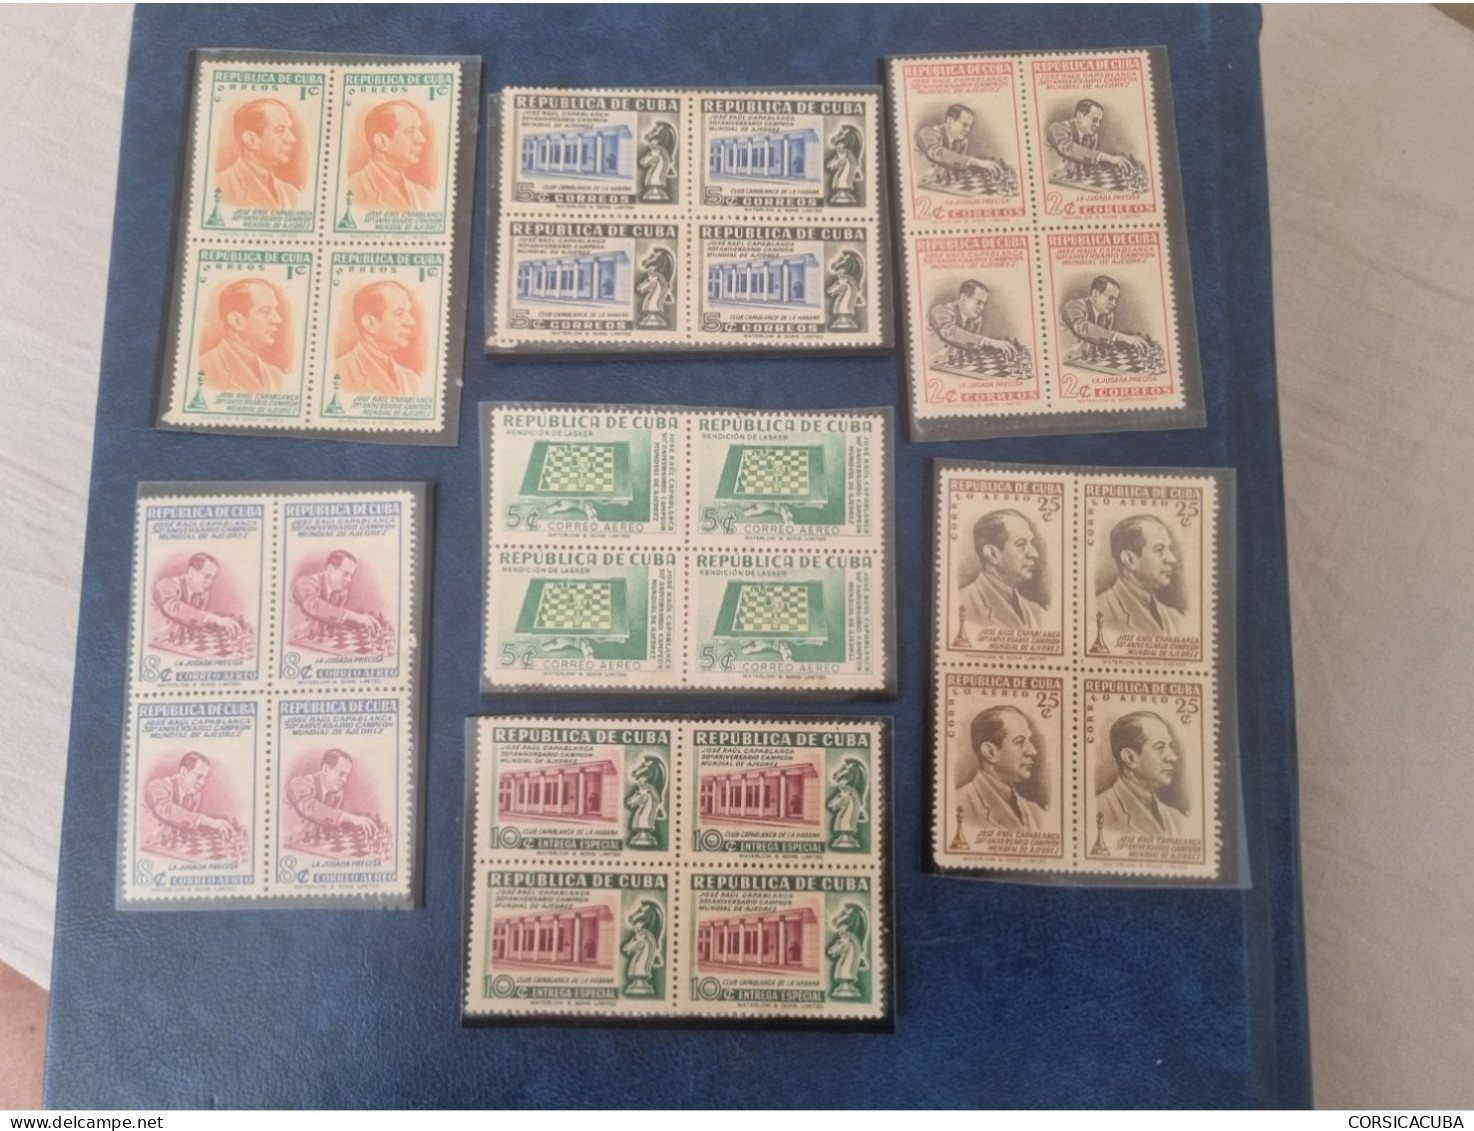 CUBA  NEUF  1951   TITULO MUNDIAL DE JOSE RAUL CAPABLANCA  //  PARFAIT  ETAT  //  1er  CHOIX  // - Unused Stamps